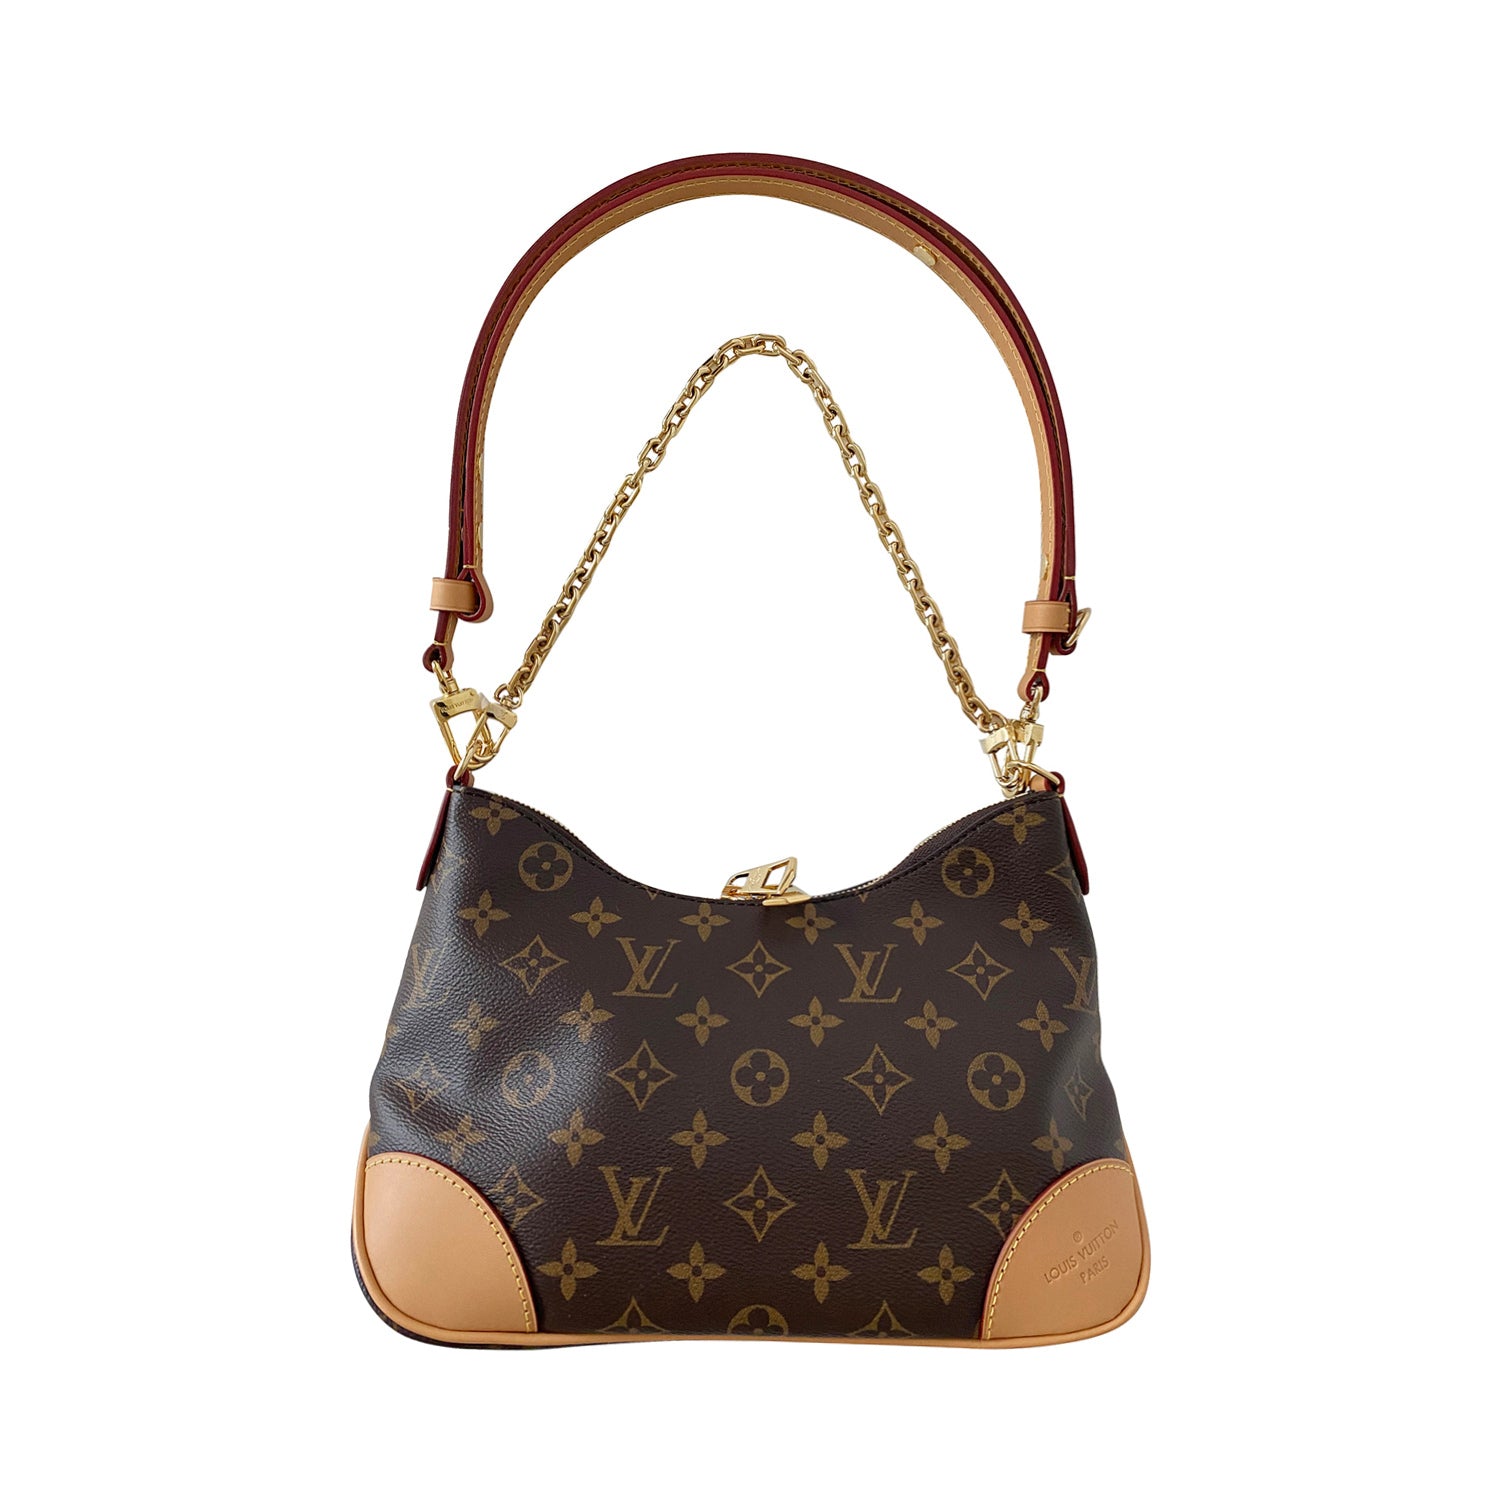 Shop authentic Louis Vuitton Monogram Boulogne Bag at revogue for just ...